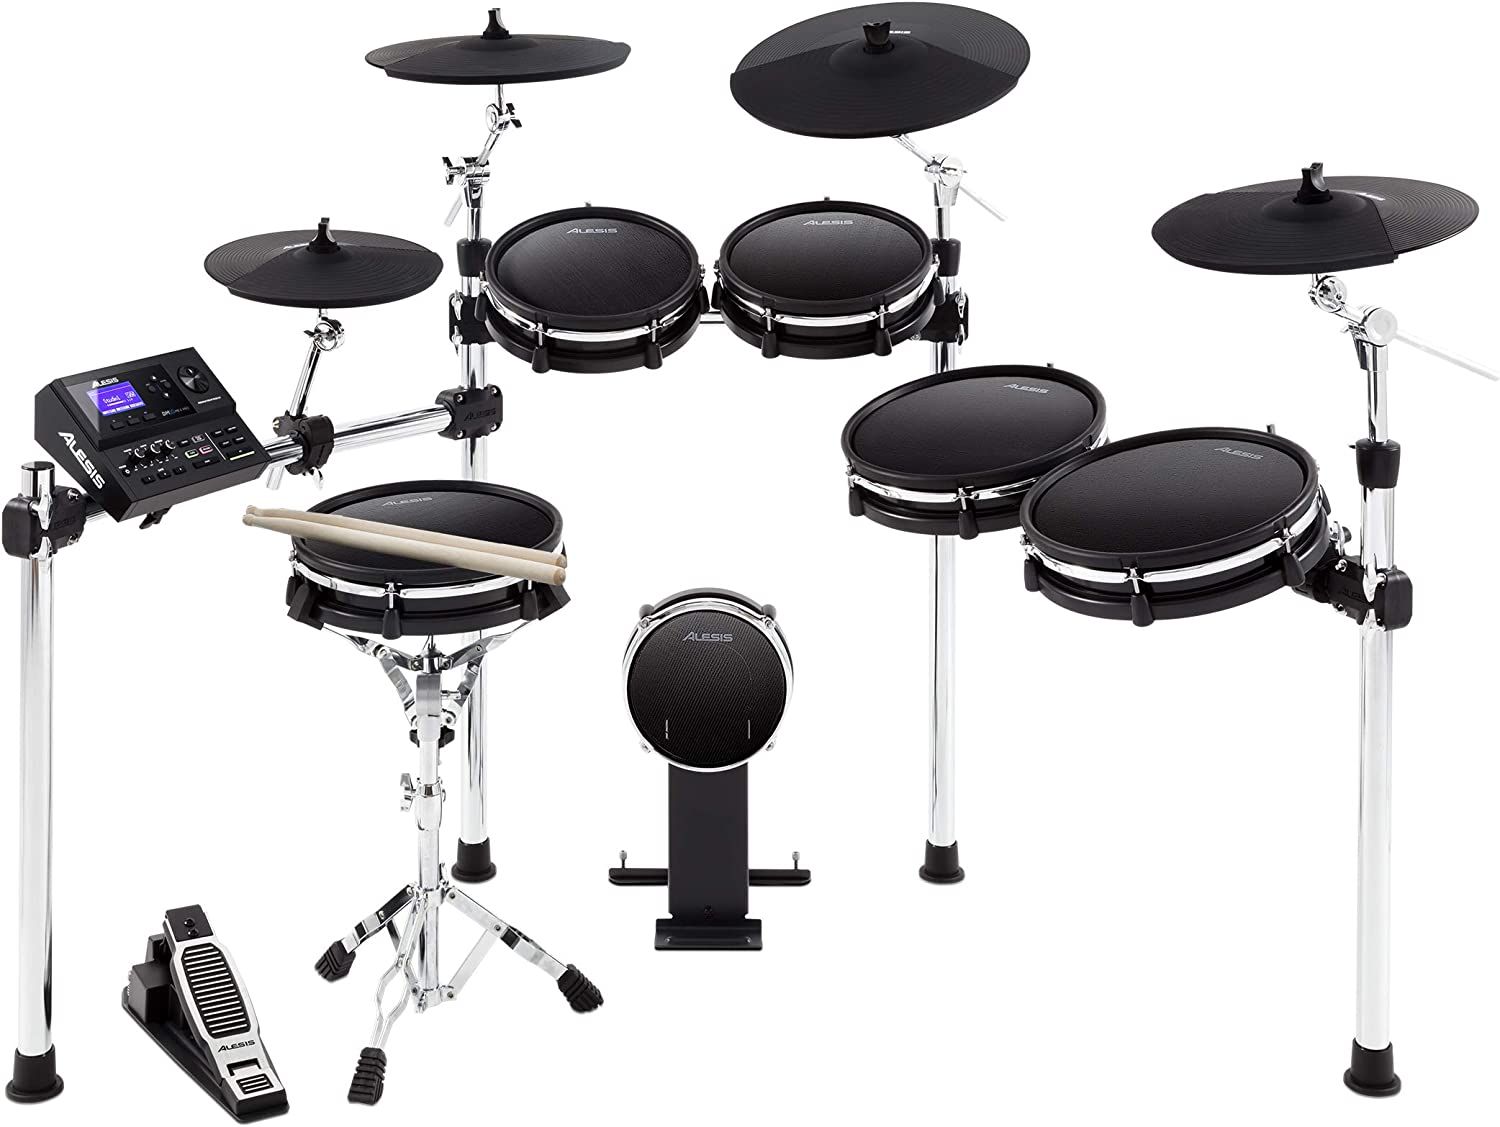 Alesis Drums DM10 MKII Pro Kit